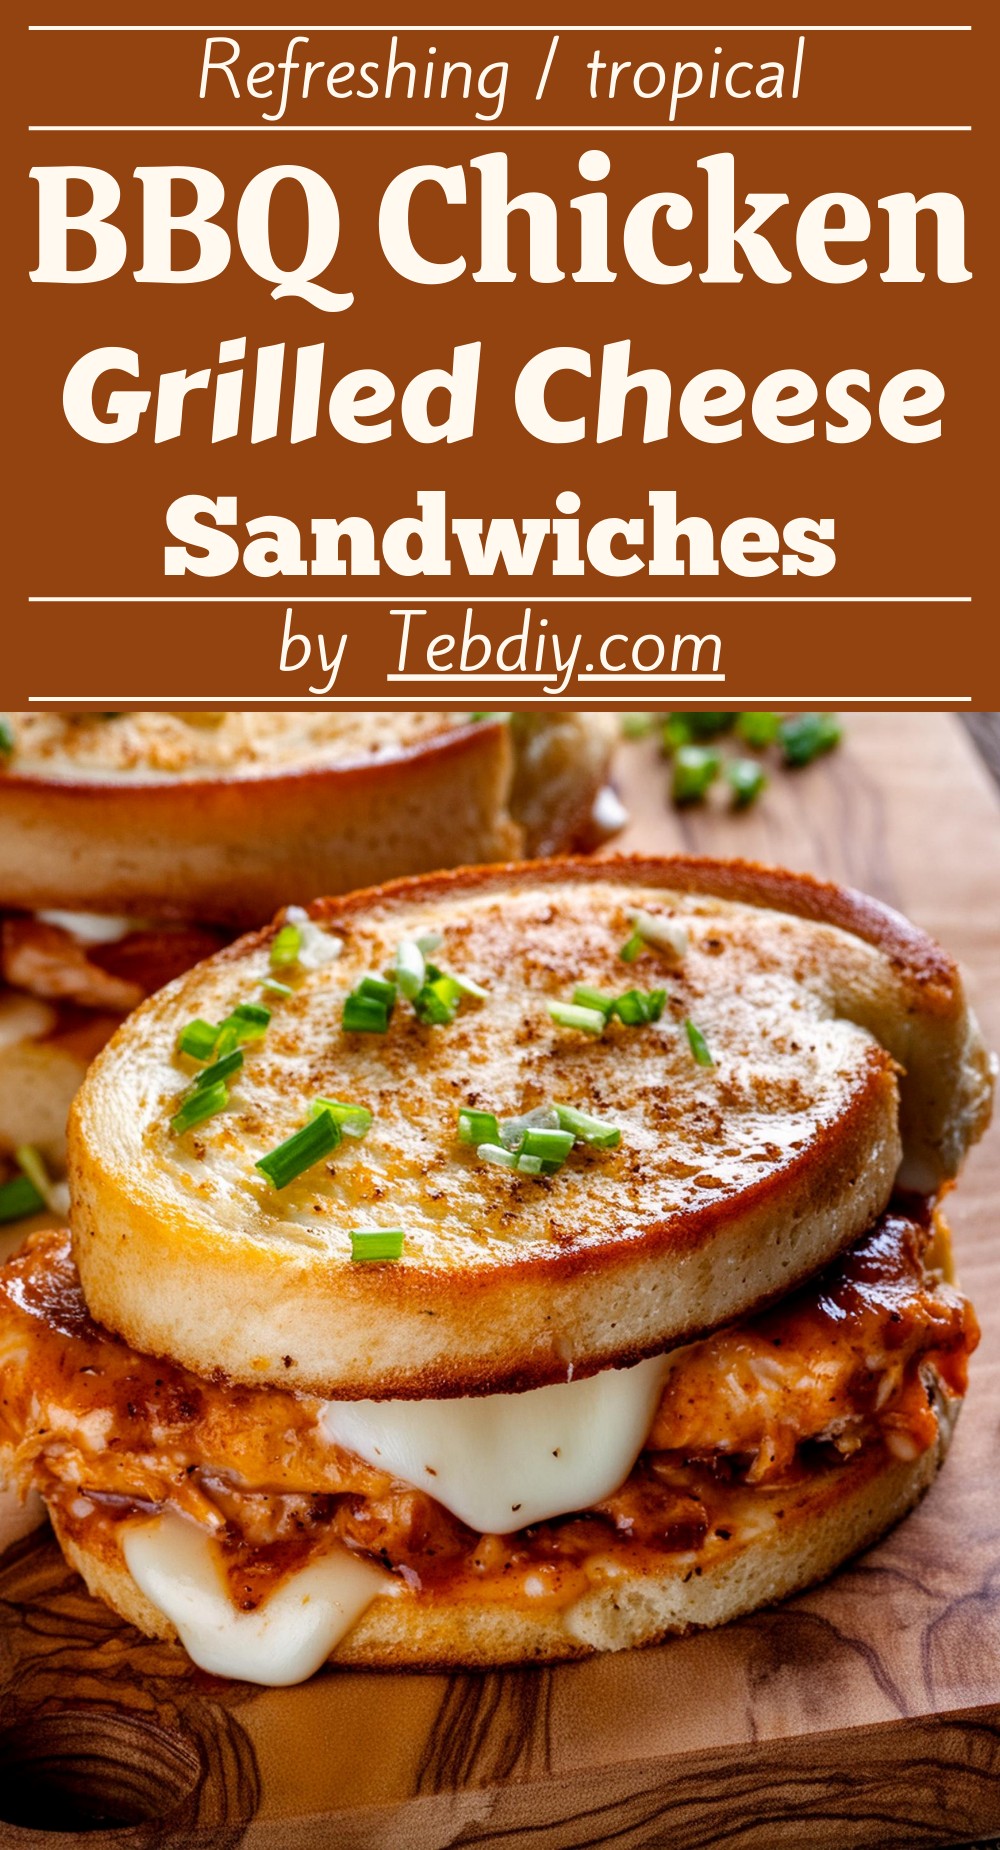 BBQ Chicken Grilled Cheese Sandwiches